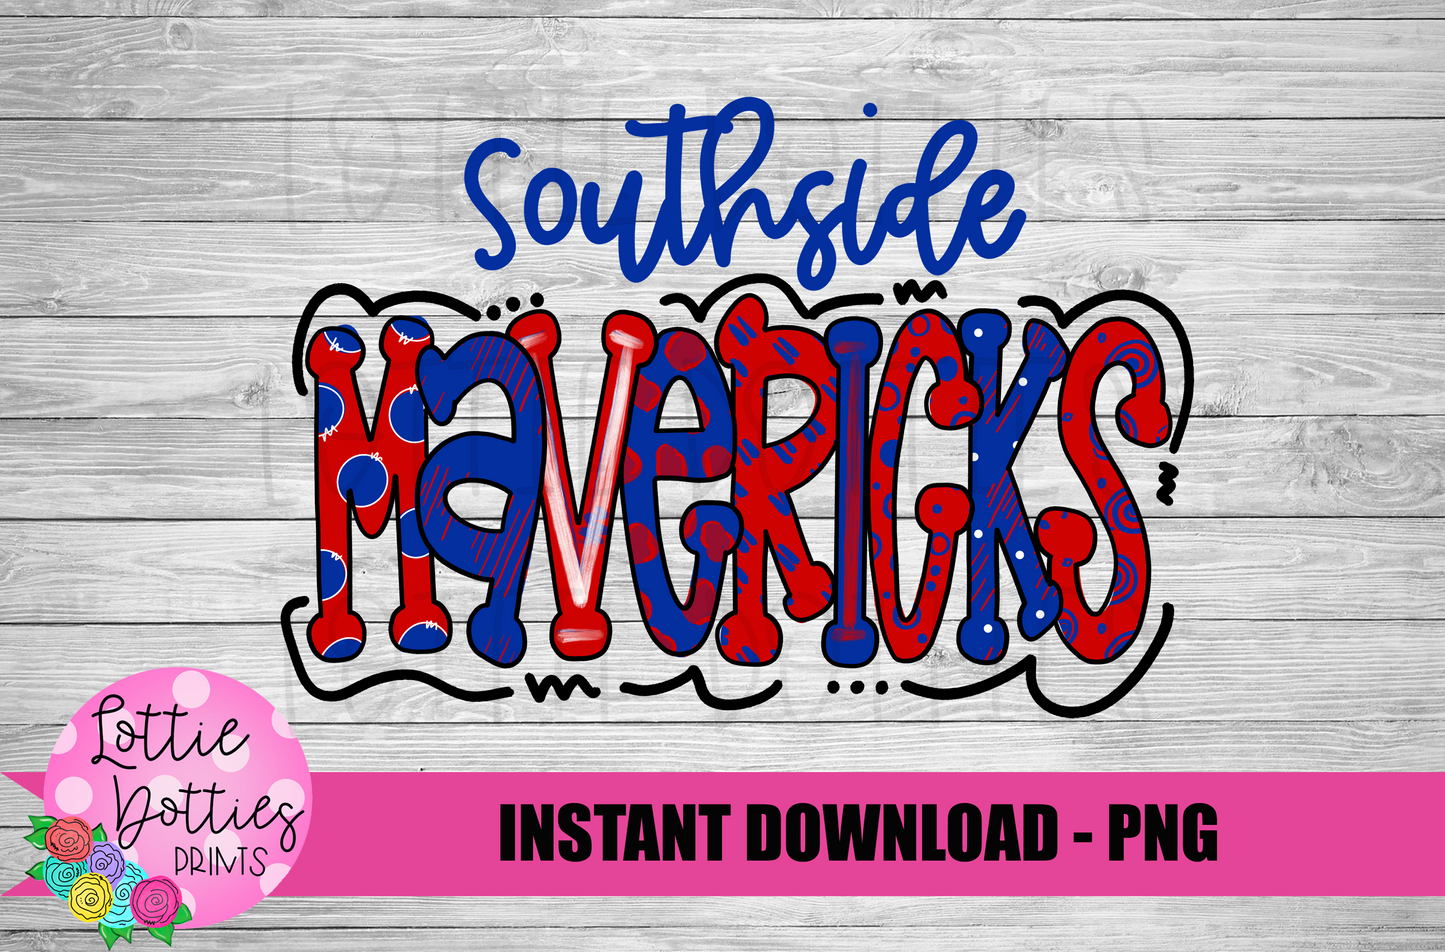 Southside Mavericks Png - Mavericks Sublimation Design - Digital Download